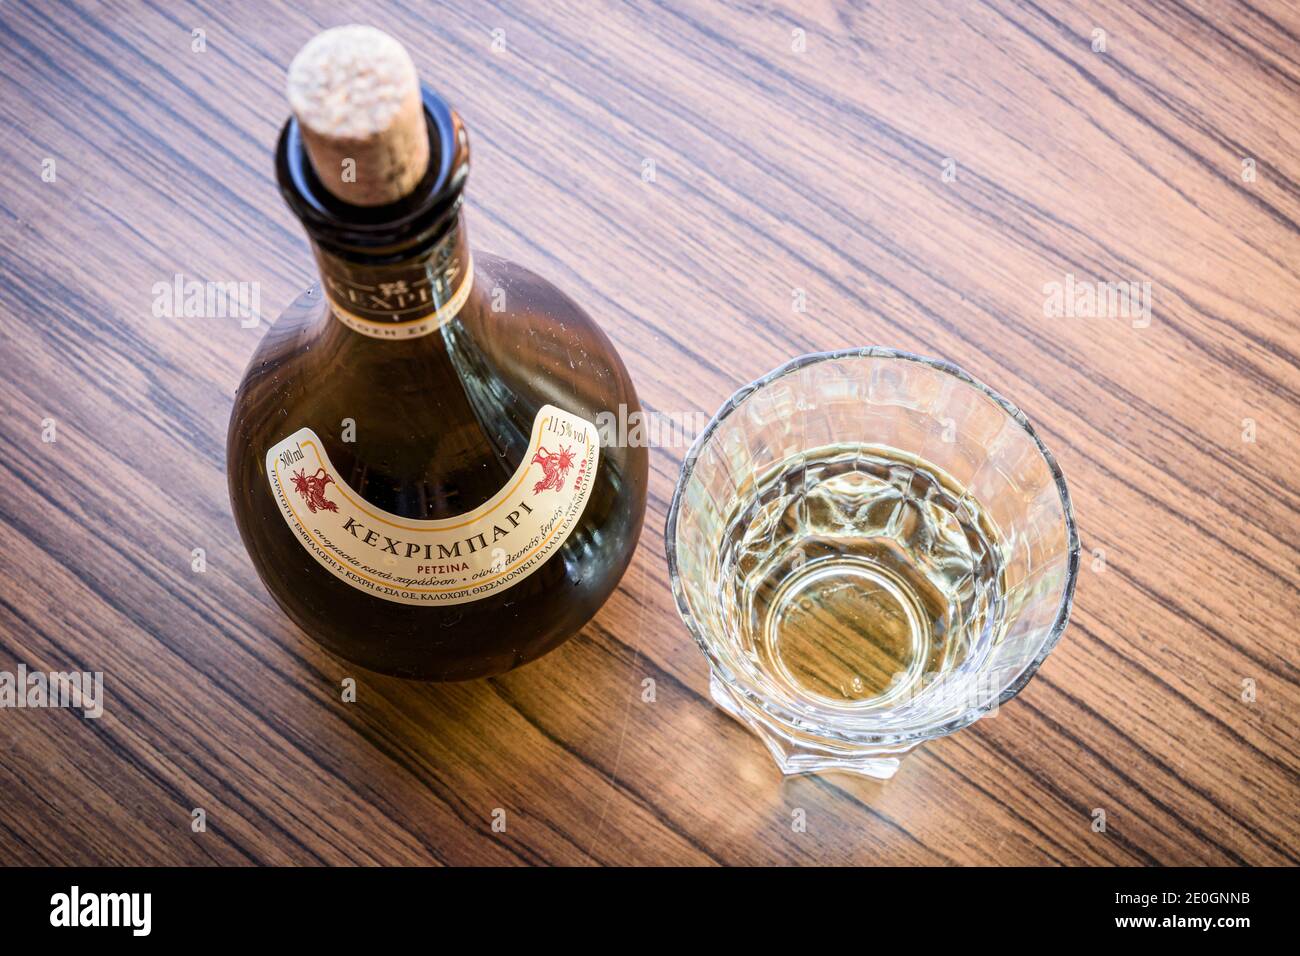 Ein Glas und eine Flasche Kexrimpari Retsina, Griechenland Stockfoto